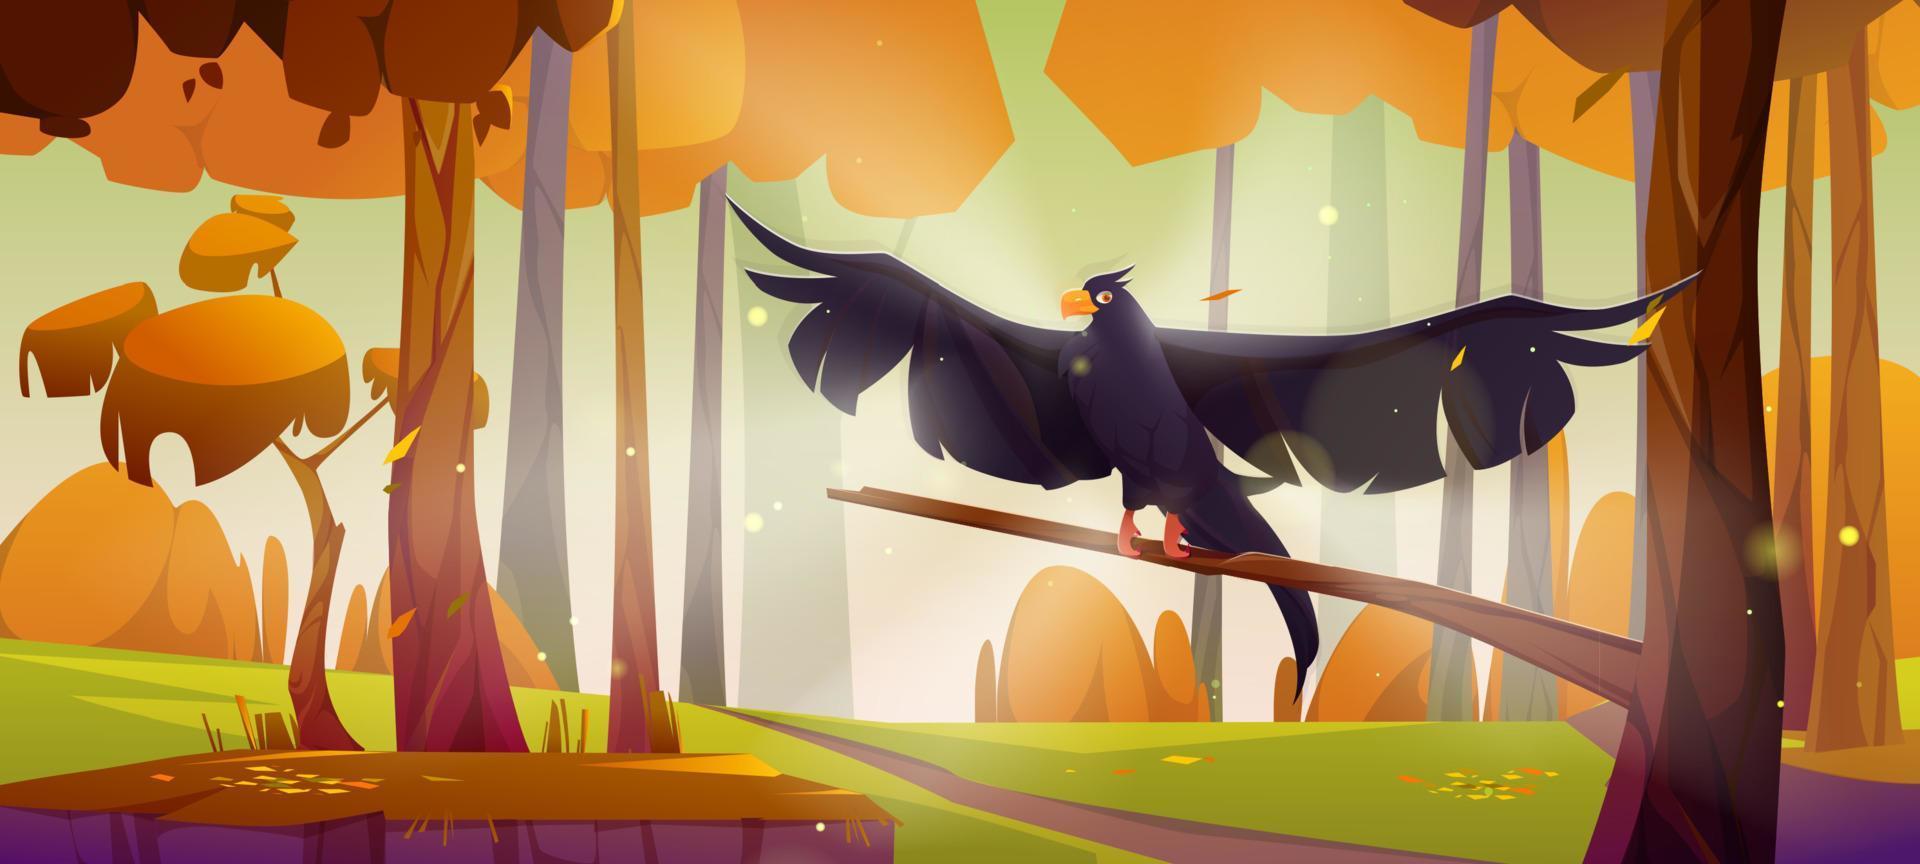 águila negra, halcón o halcón sentados en un árbol en el bosque vector